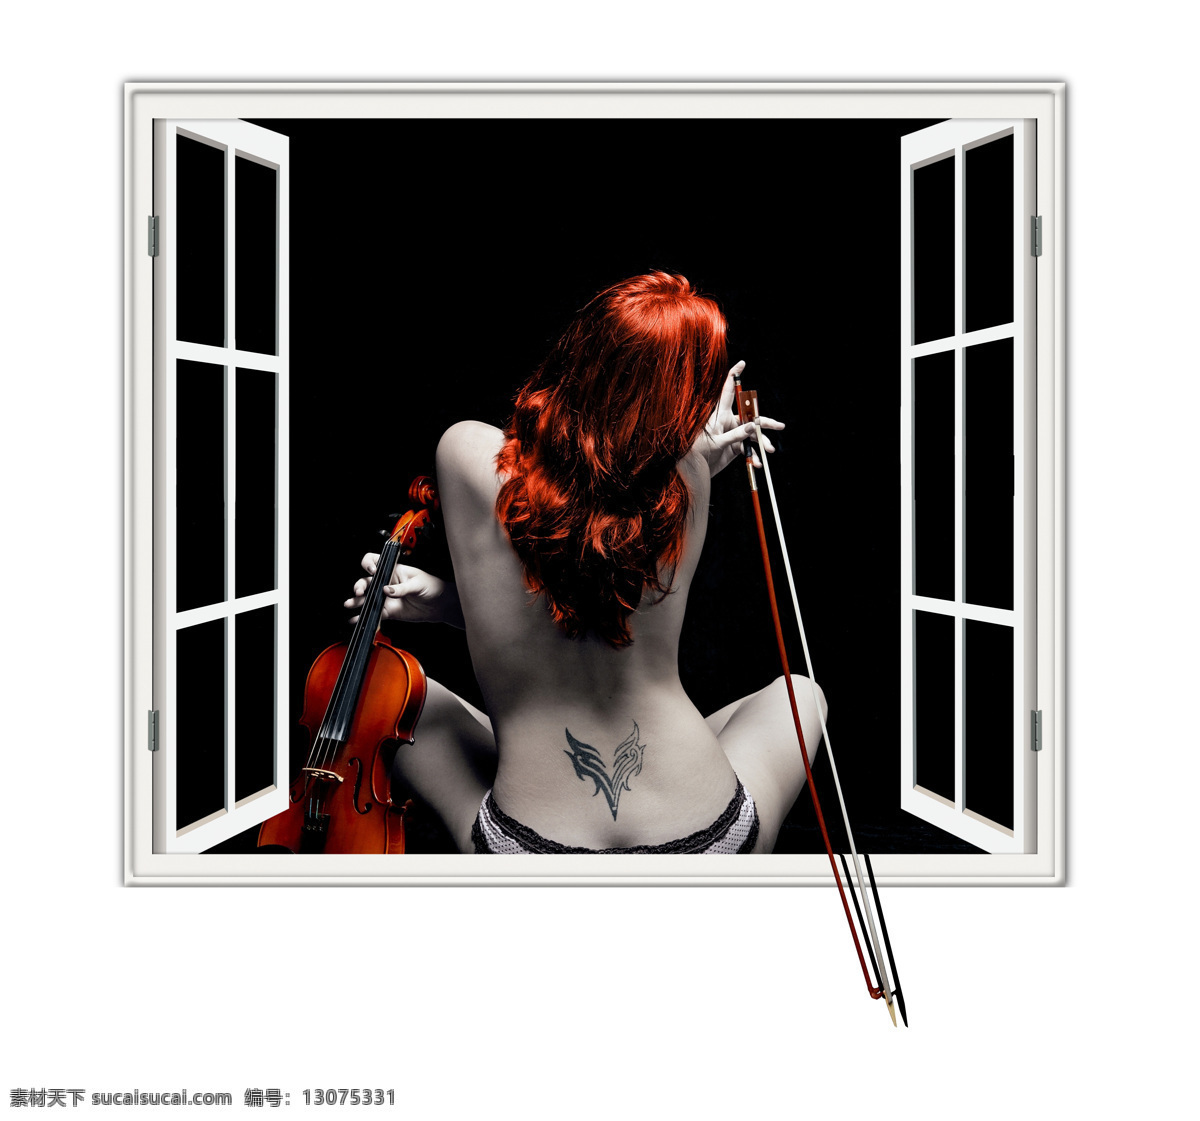 3d 创意 高清 立体 橱窗 美女 纹身 背景 墙 背景墙 效果图